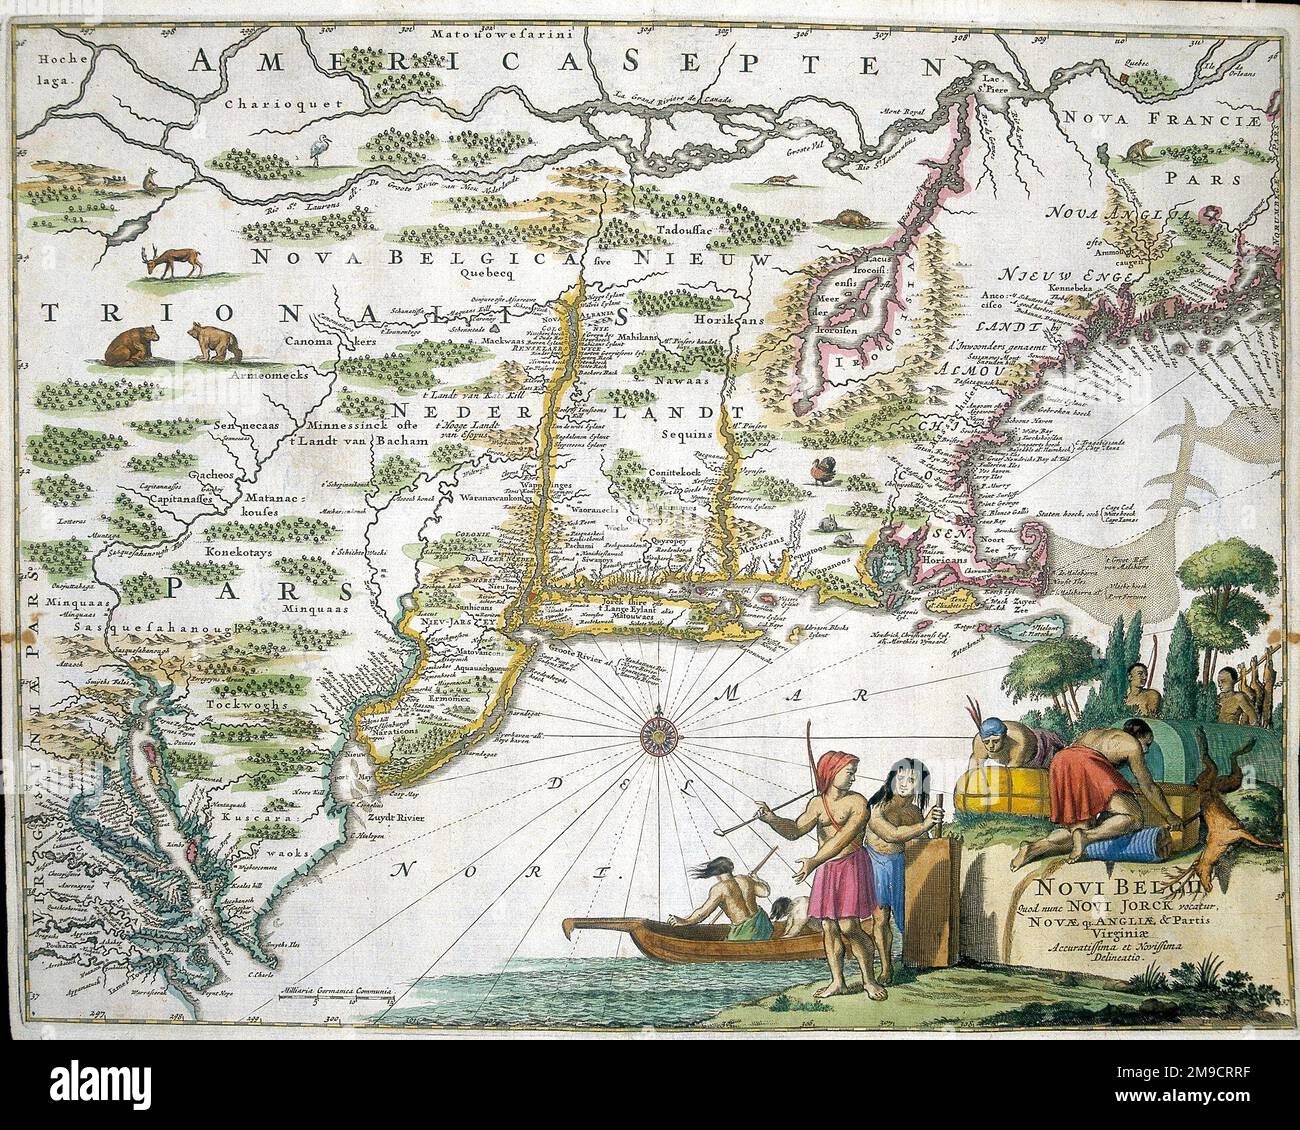 17th century Map of New Belgium and New York, America Stock Photo